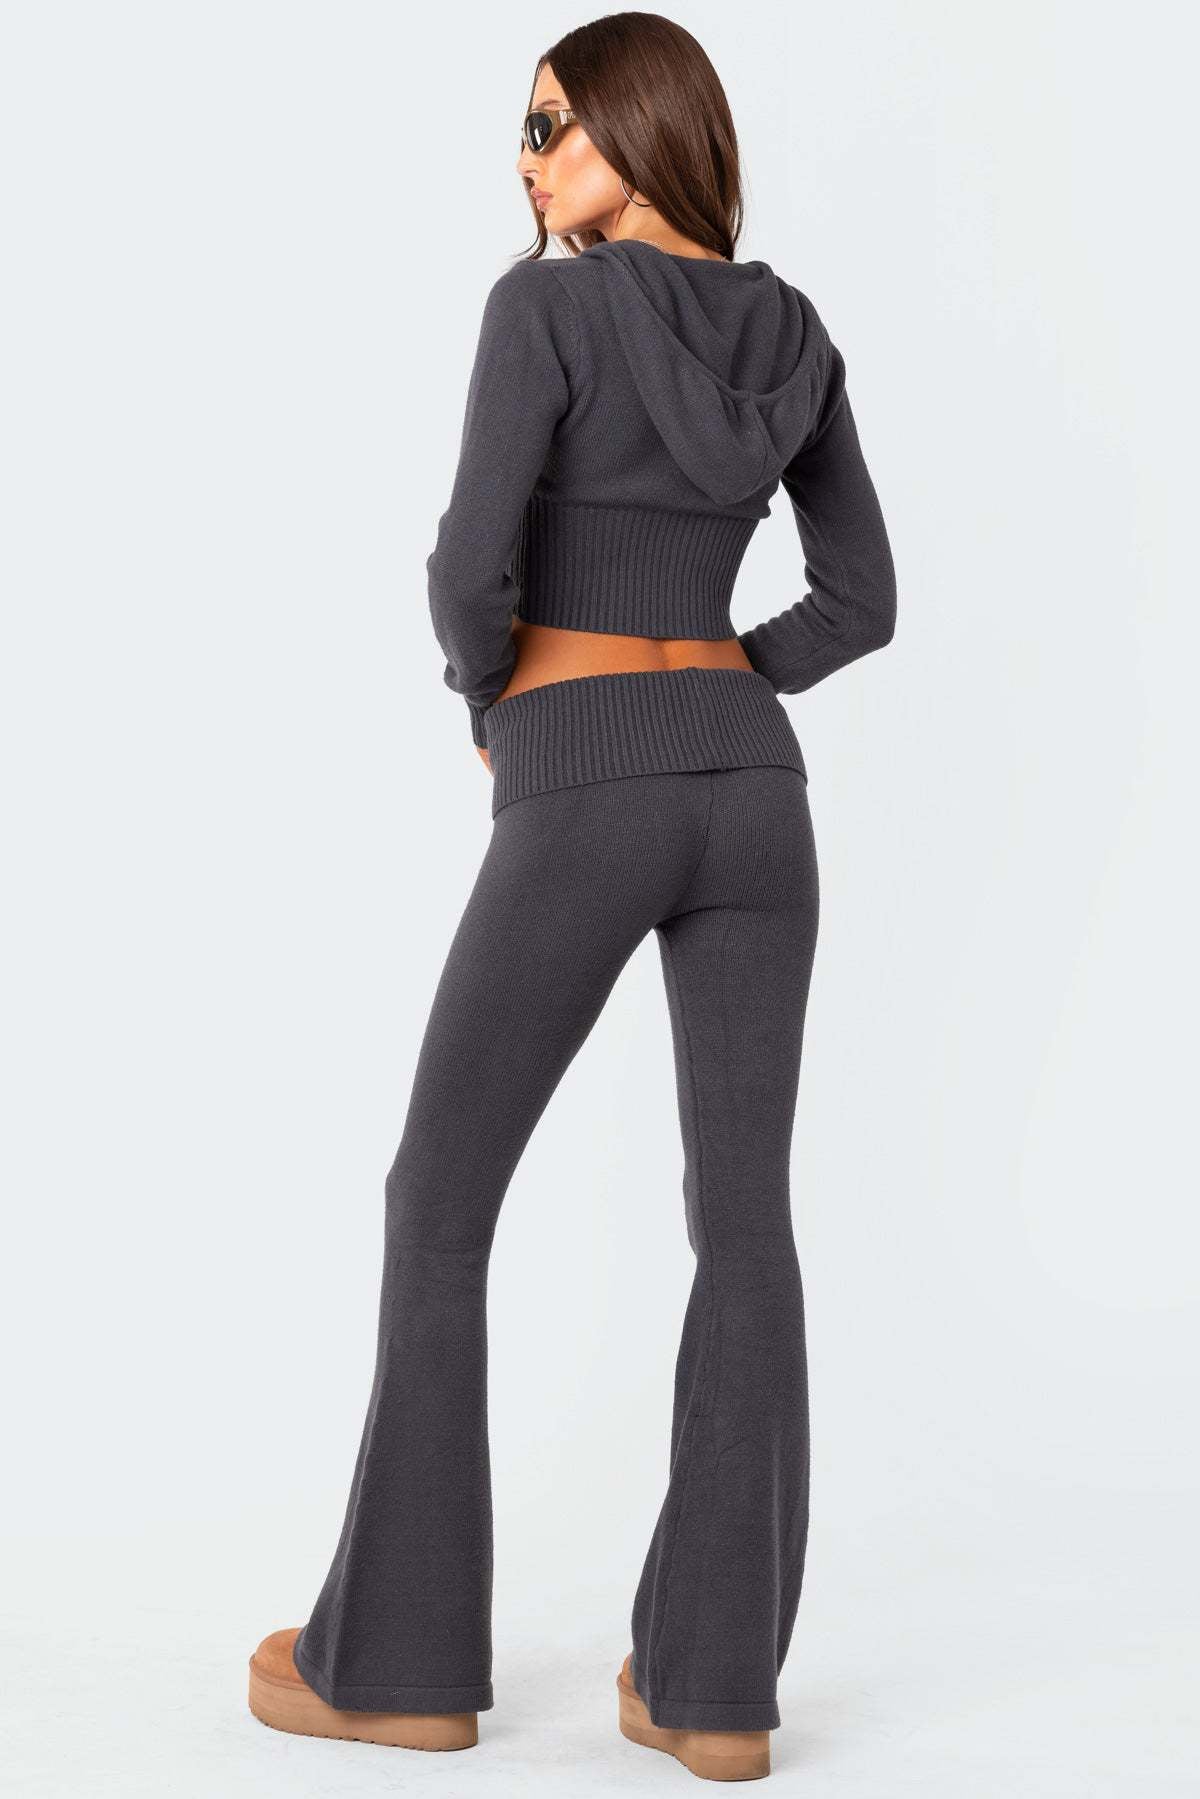 Women's Zipper Long Sleeve Trousers Suit